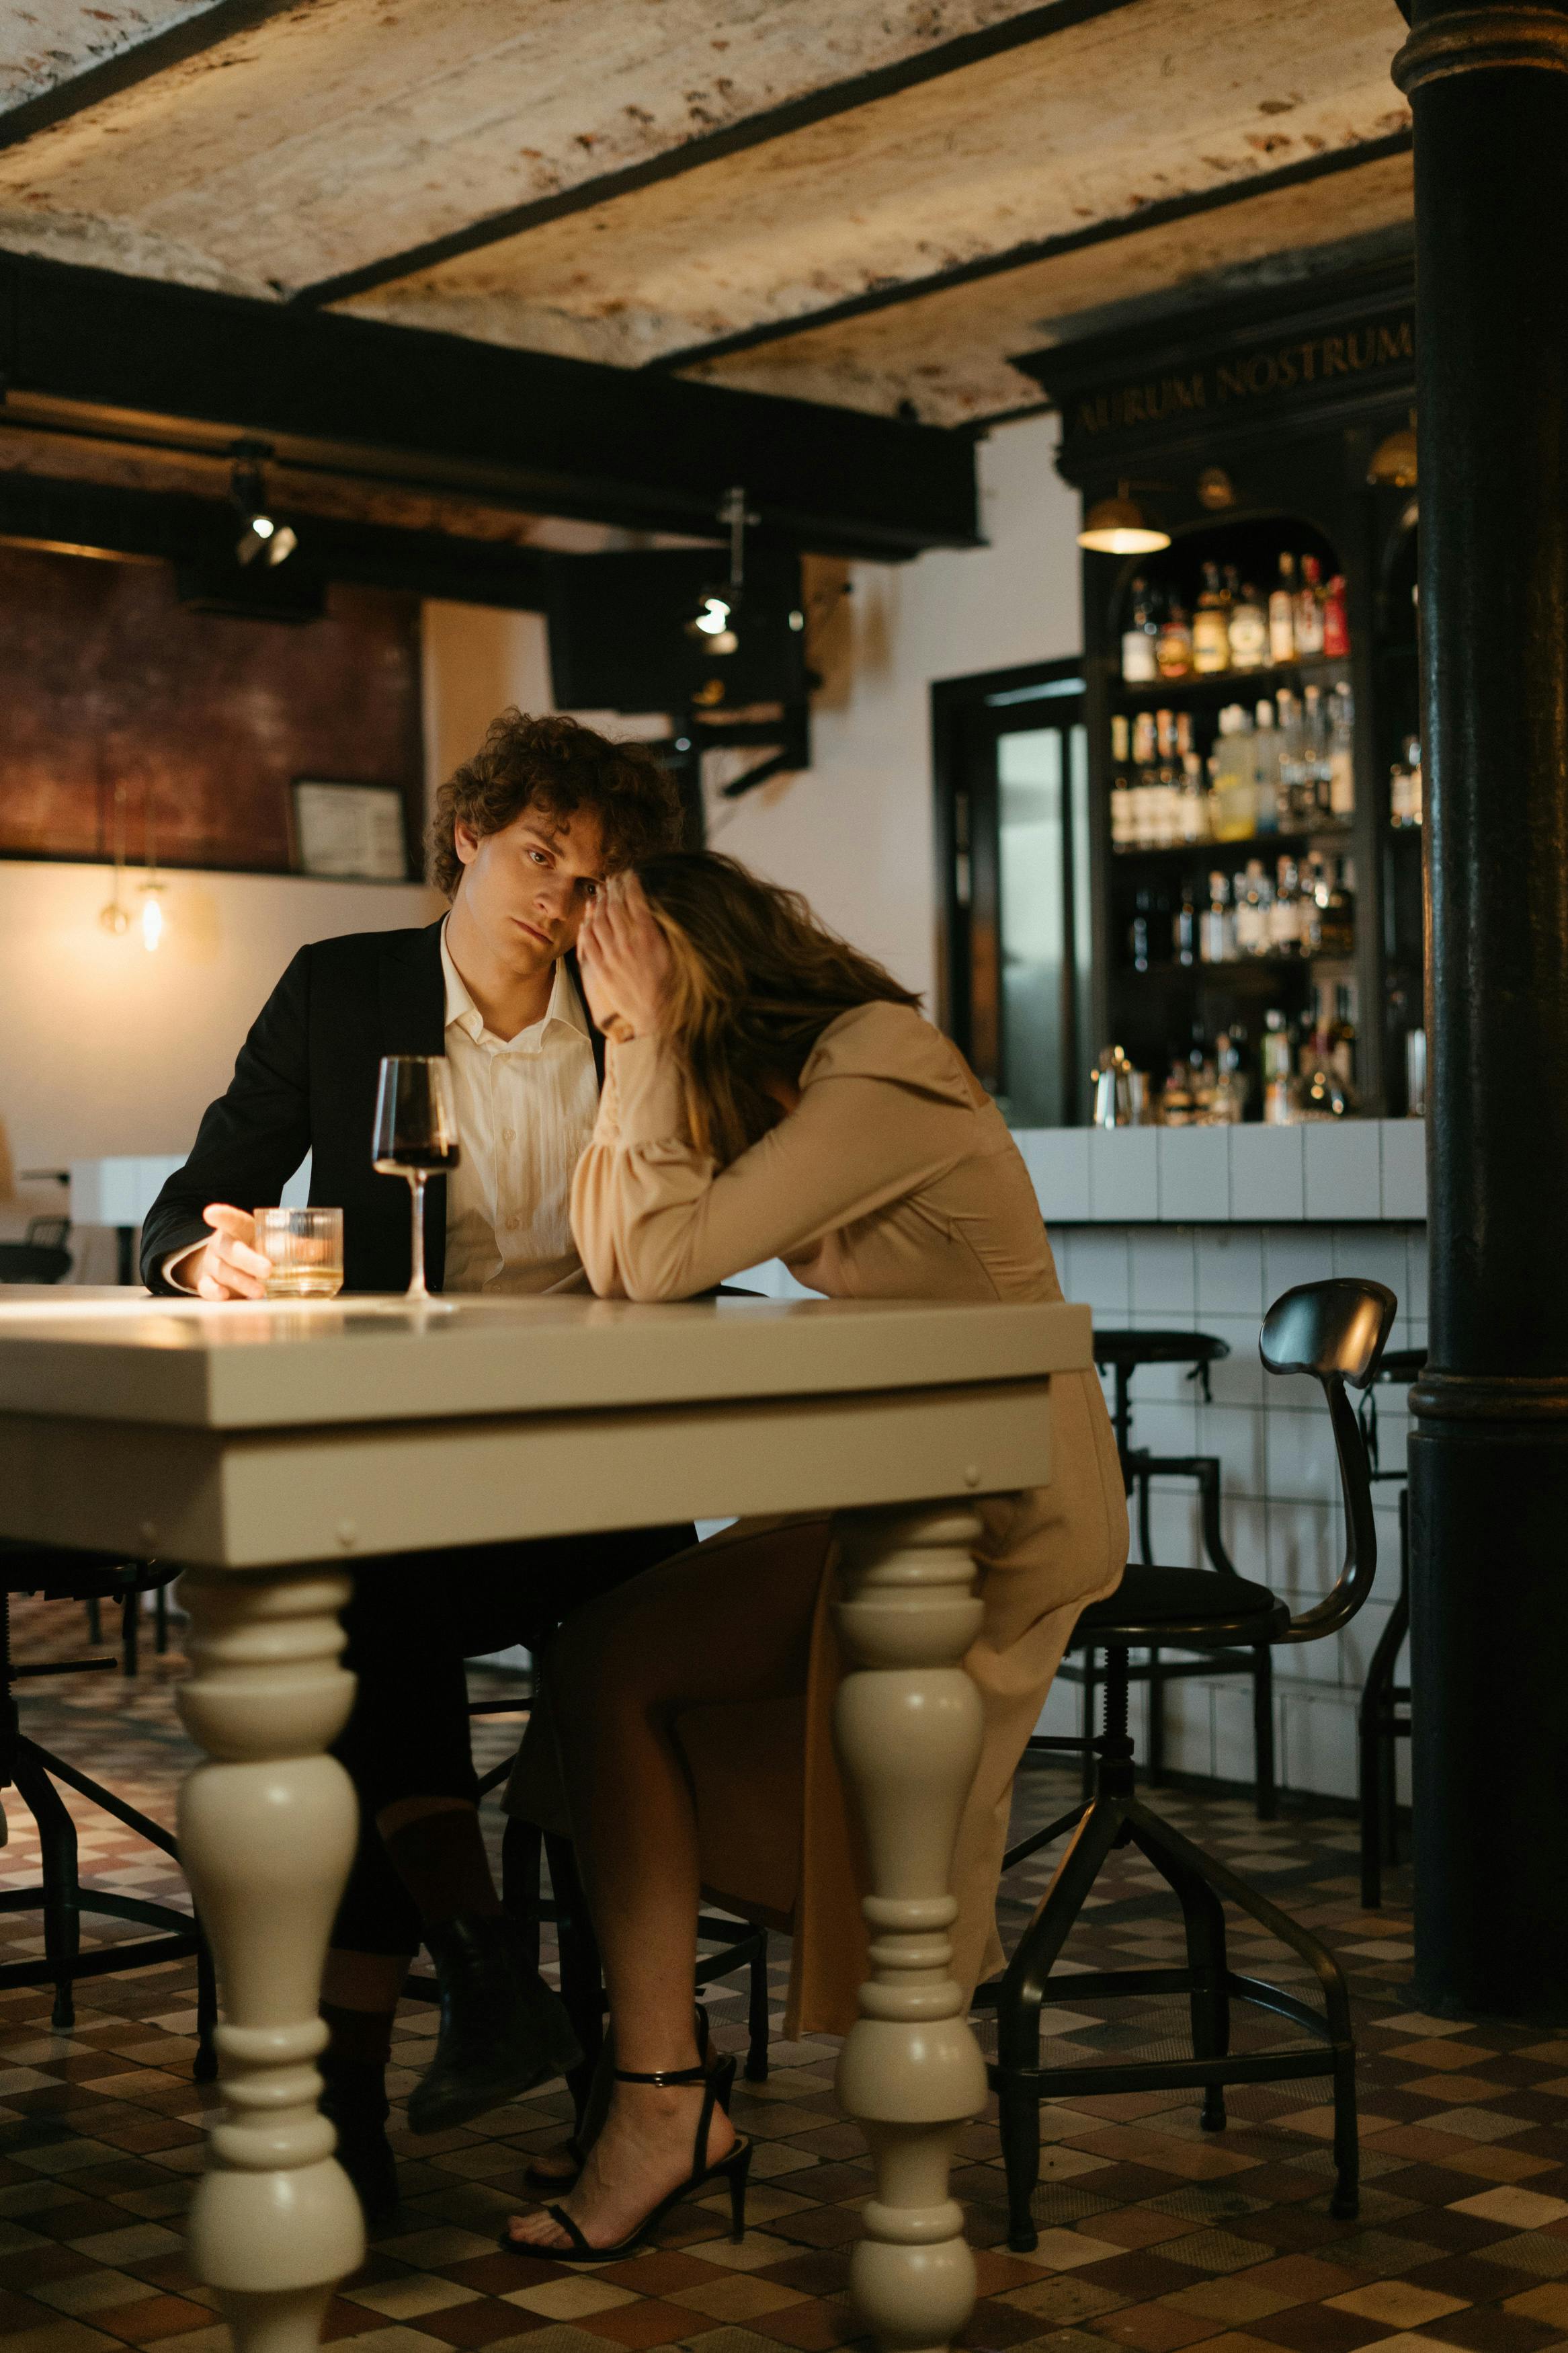 Una pareja discutiendo en un establecimiento | Fuente: Pexels